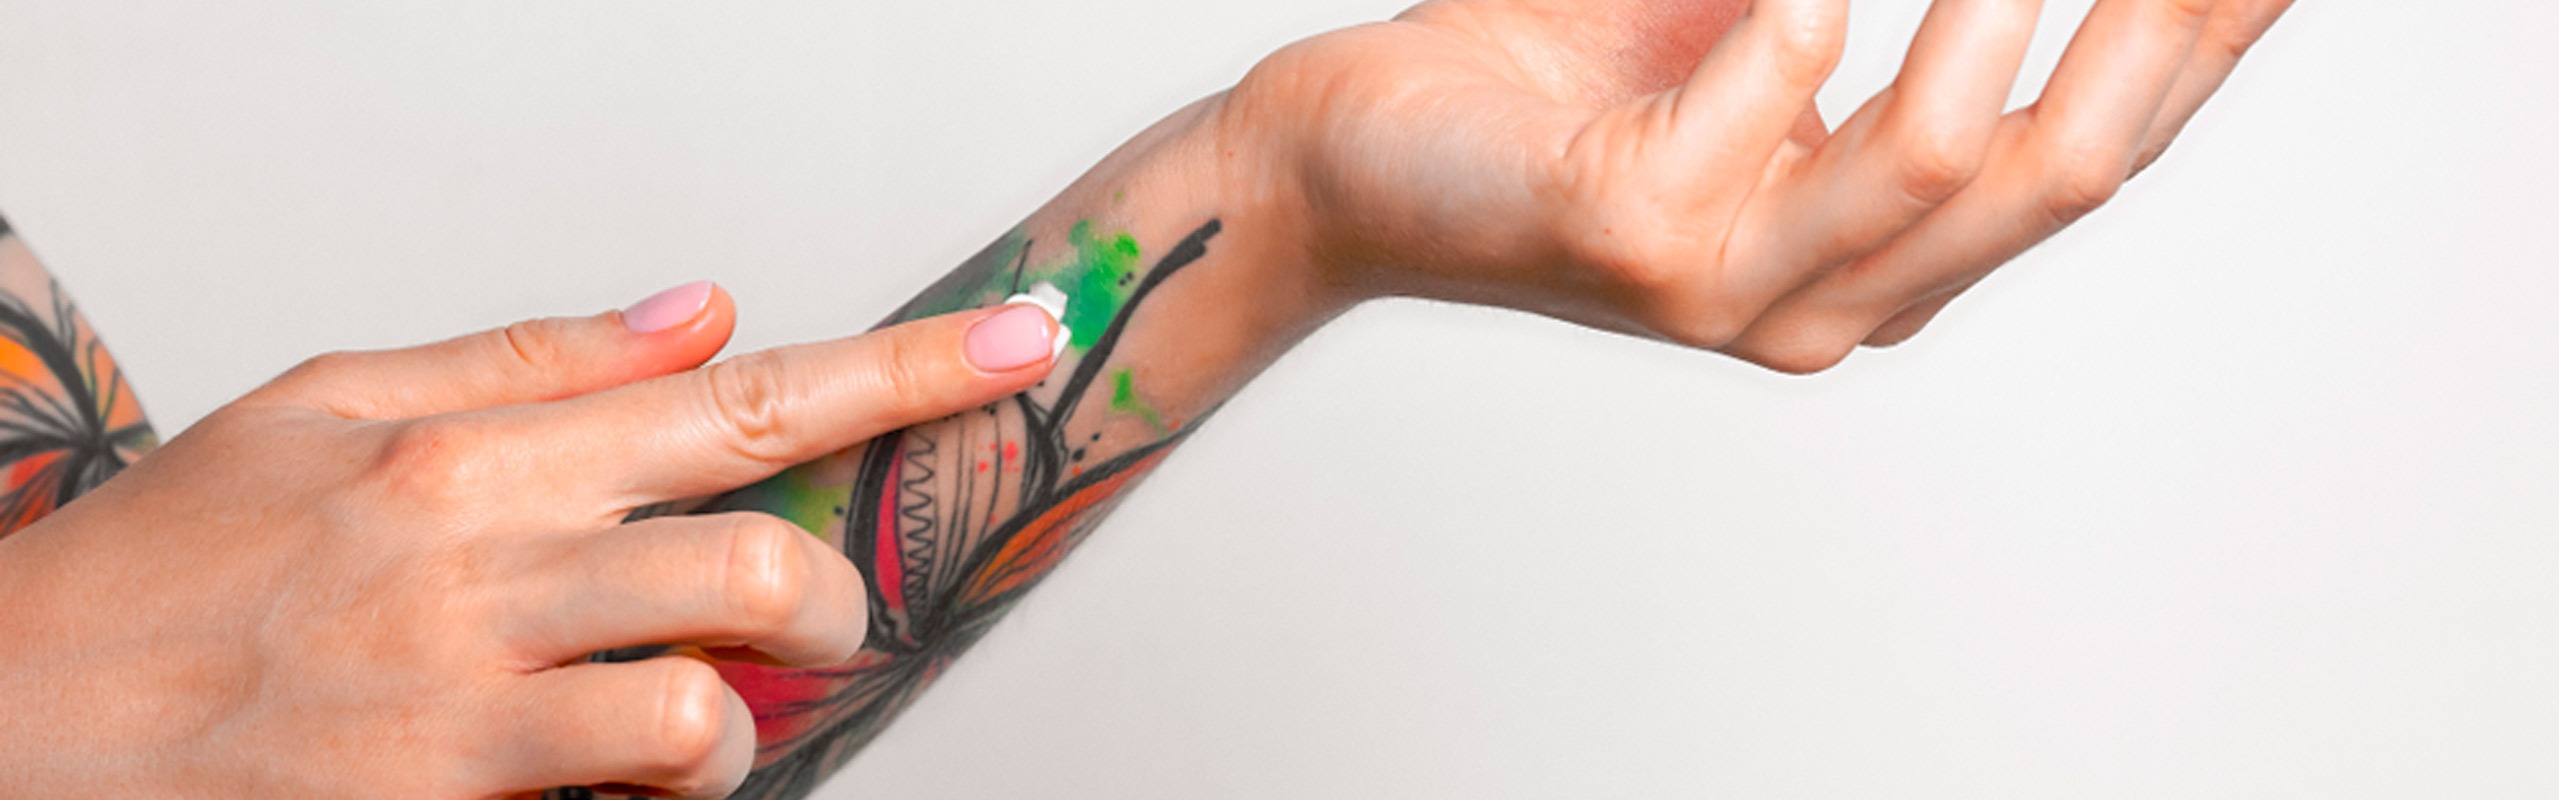 Descubre cómo cuidar un tatuaje infectado a través de nuestros consejos y pautas